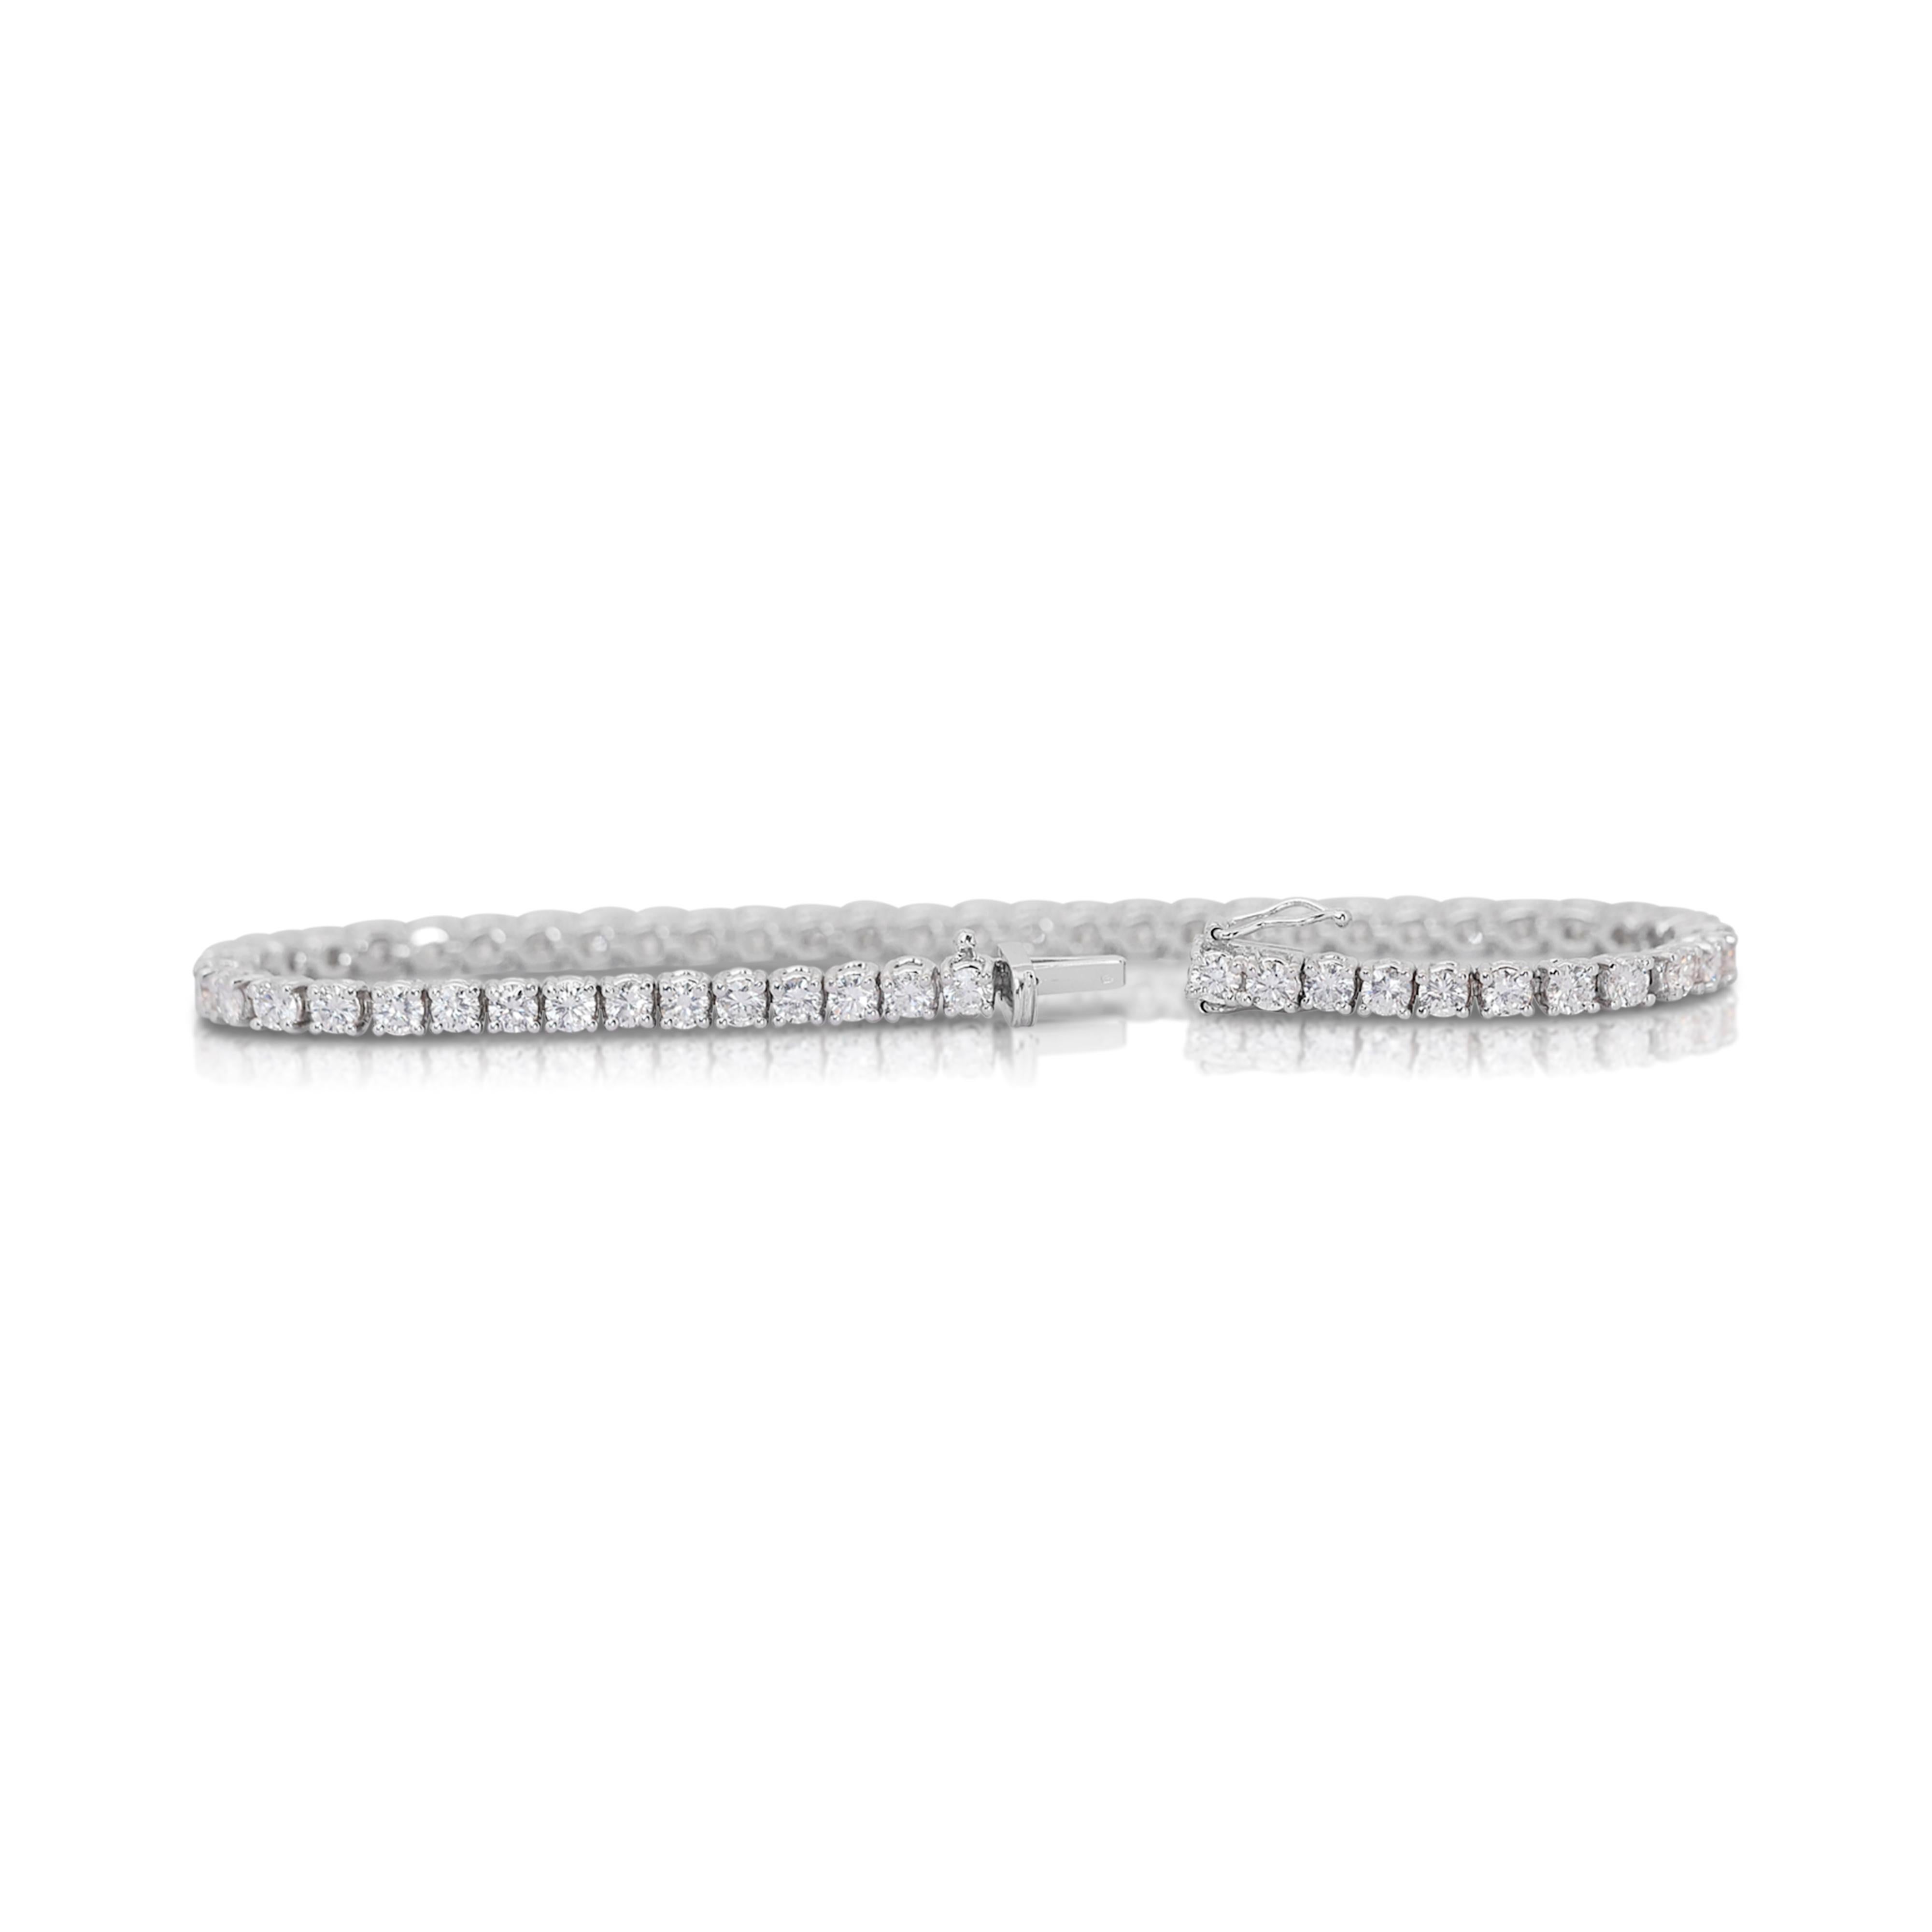 Radiant 5.32ct Diamonds Tennis Bracelet in 14k White Gold - IGI Certified For Sale 1